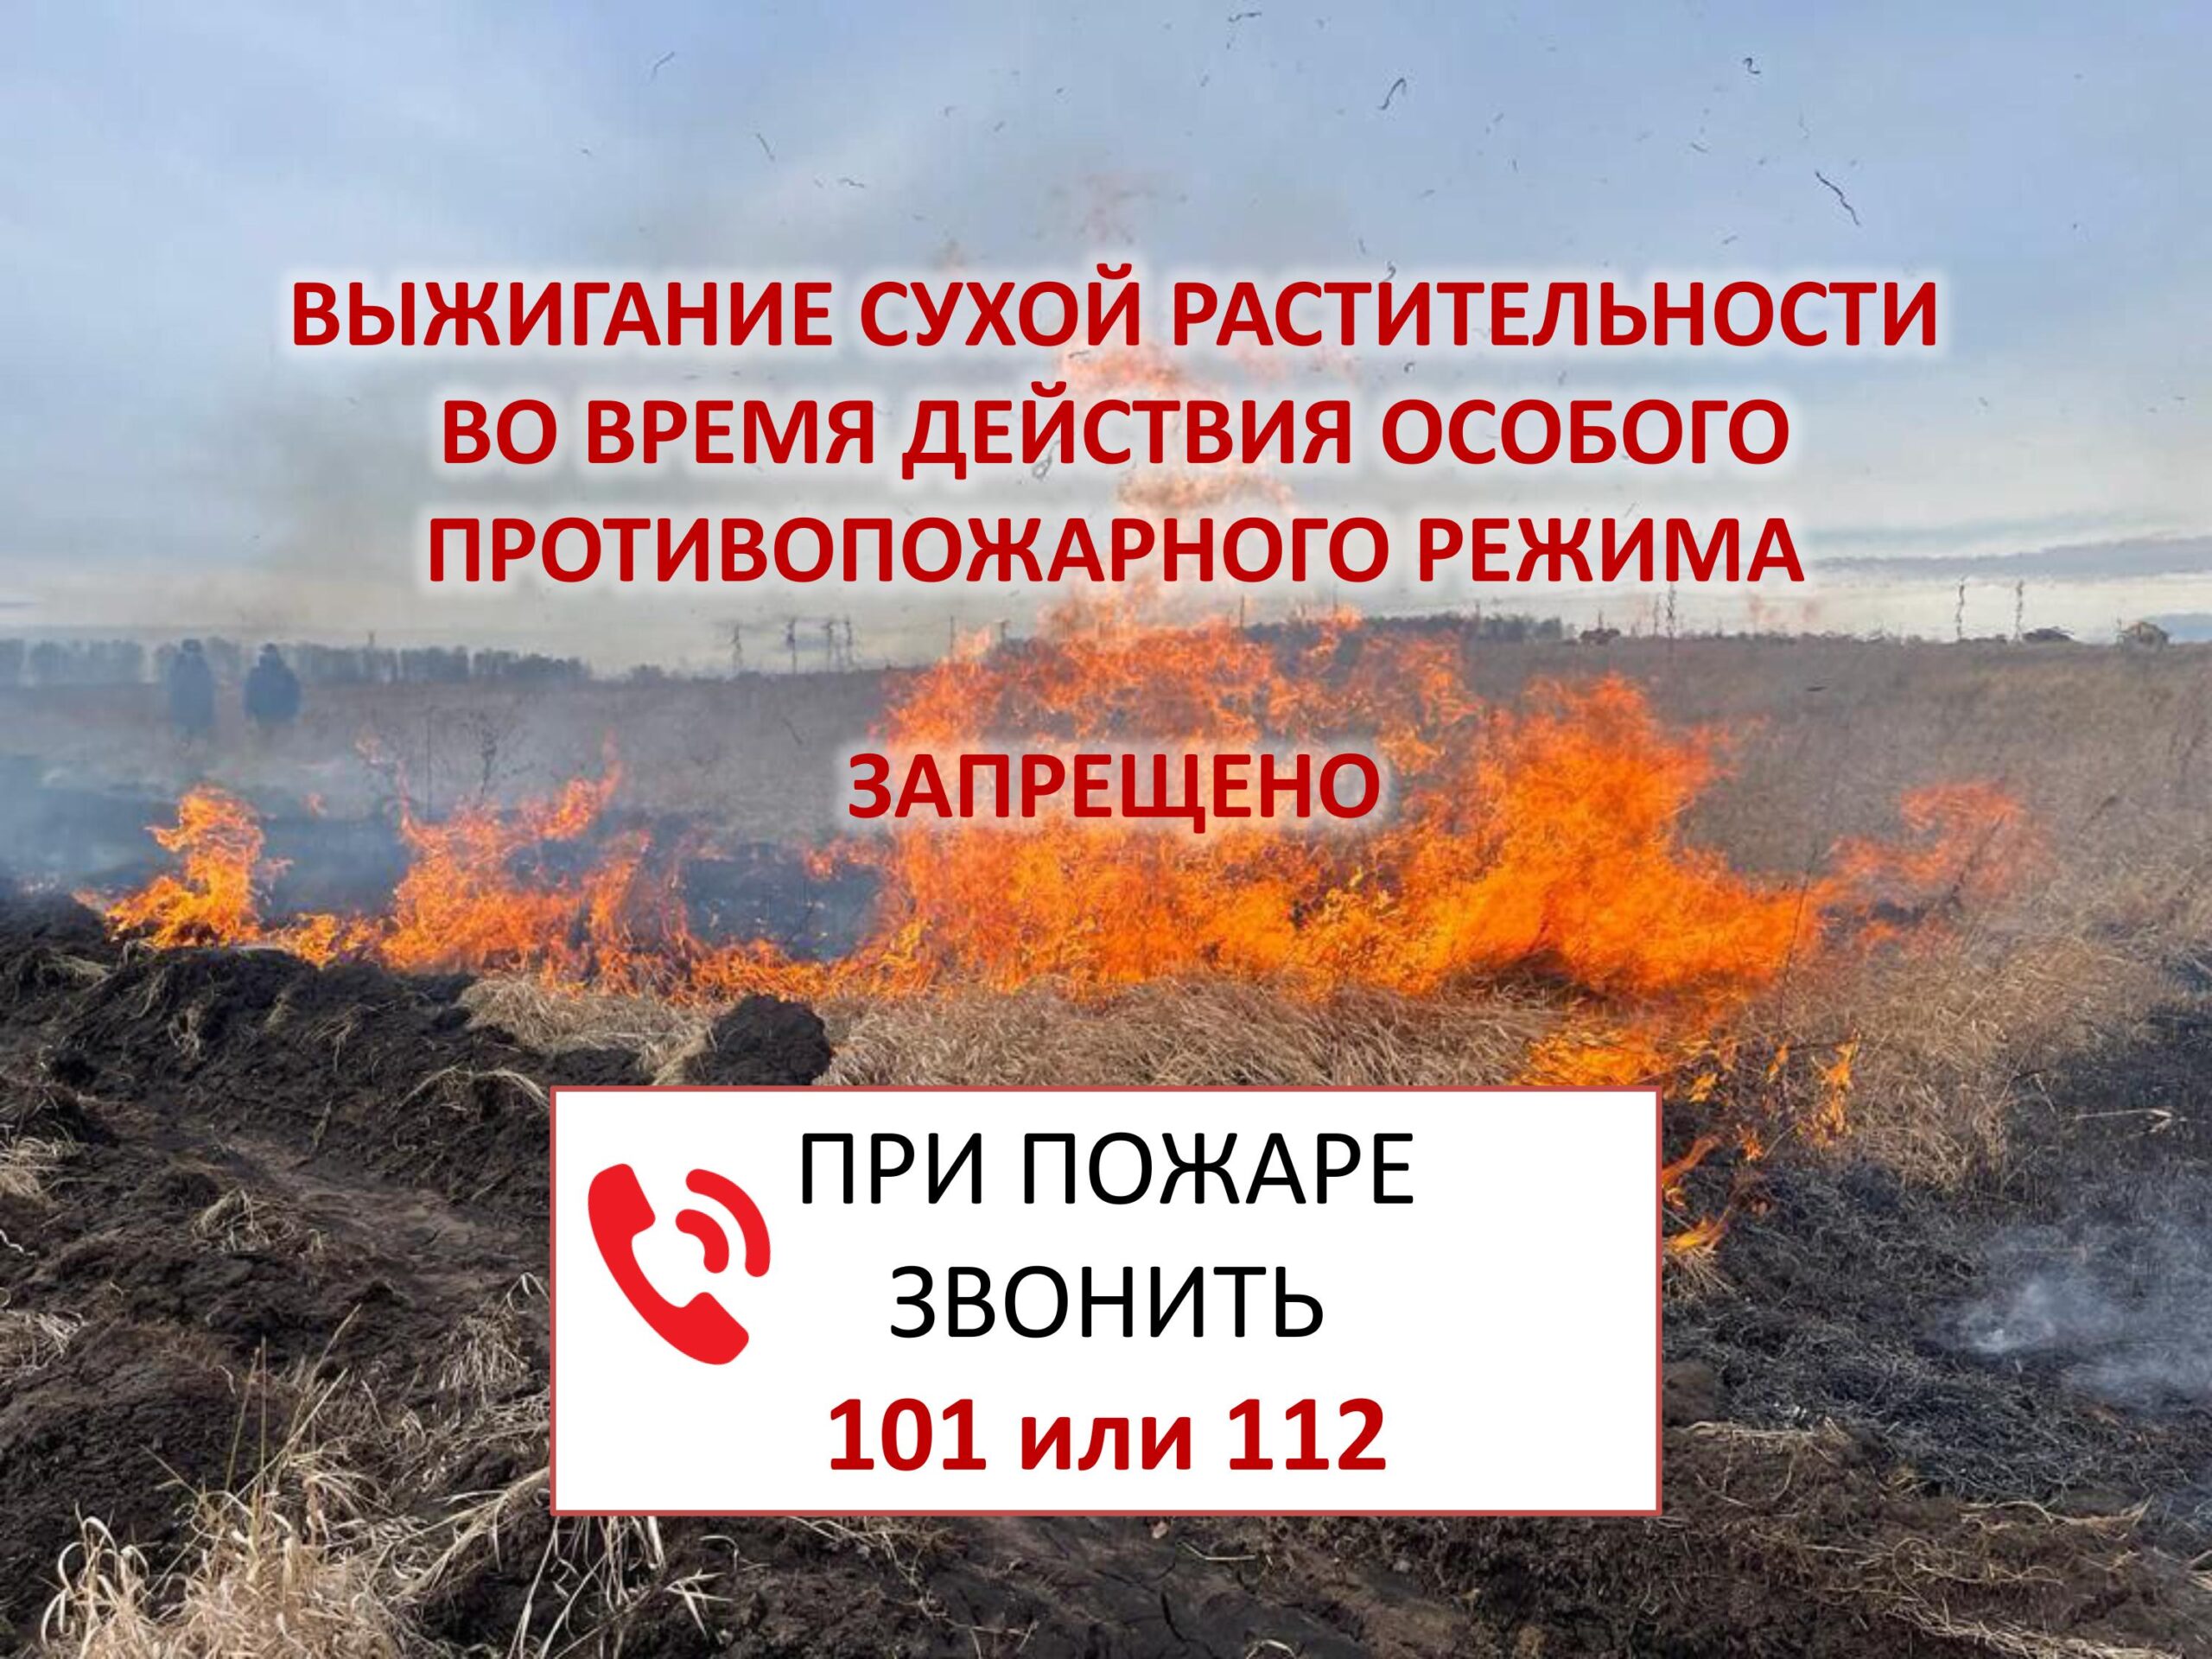 Использование открытого огня в период действия особого противопожарного режима запрещено!!!.